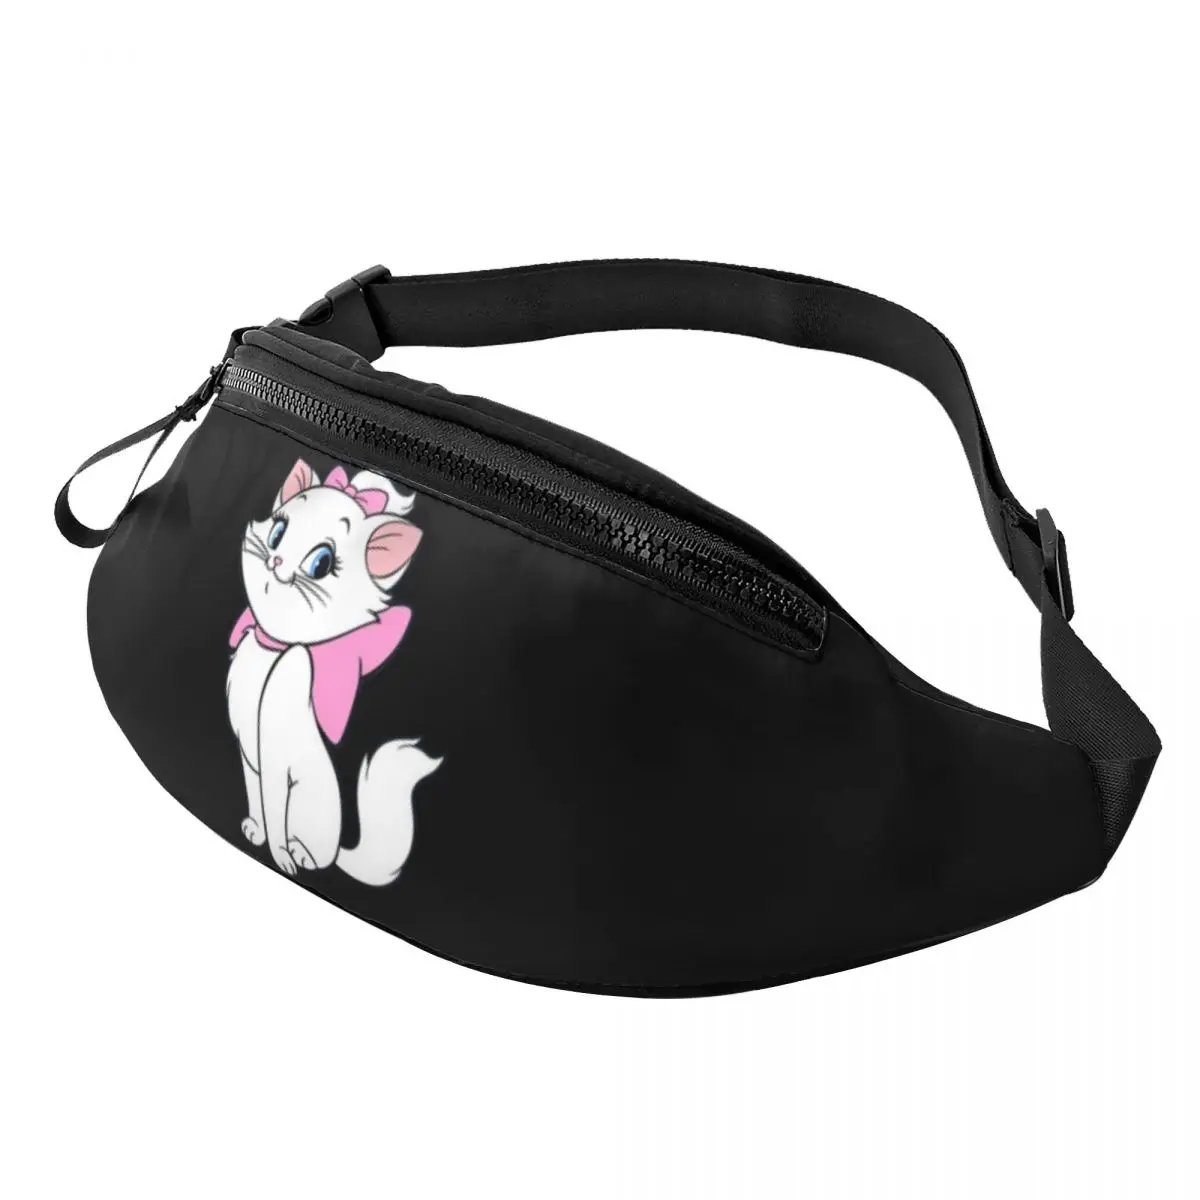 Индивидуальная поясная сумка Cute Maries Cat для женщин и мужчин, модная поясная сумка с забавным мультяшным котенком через плечо, дорожная сумка для телефона и денег